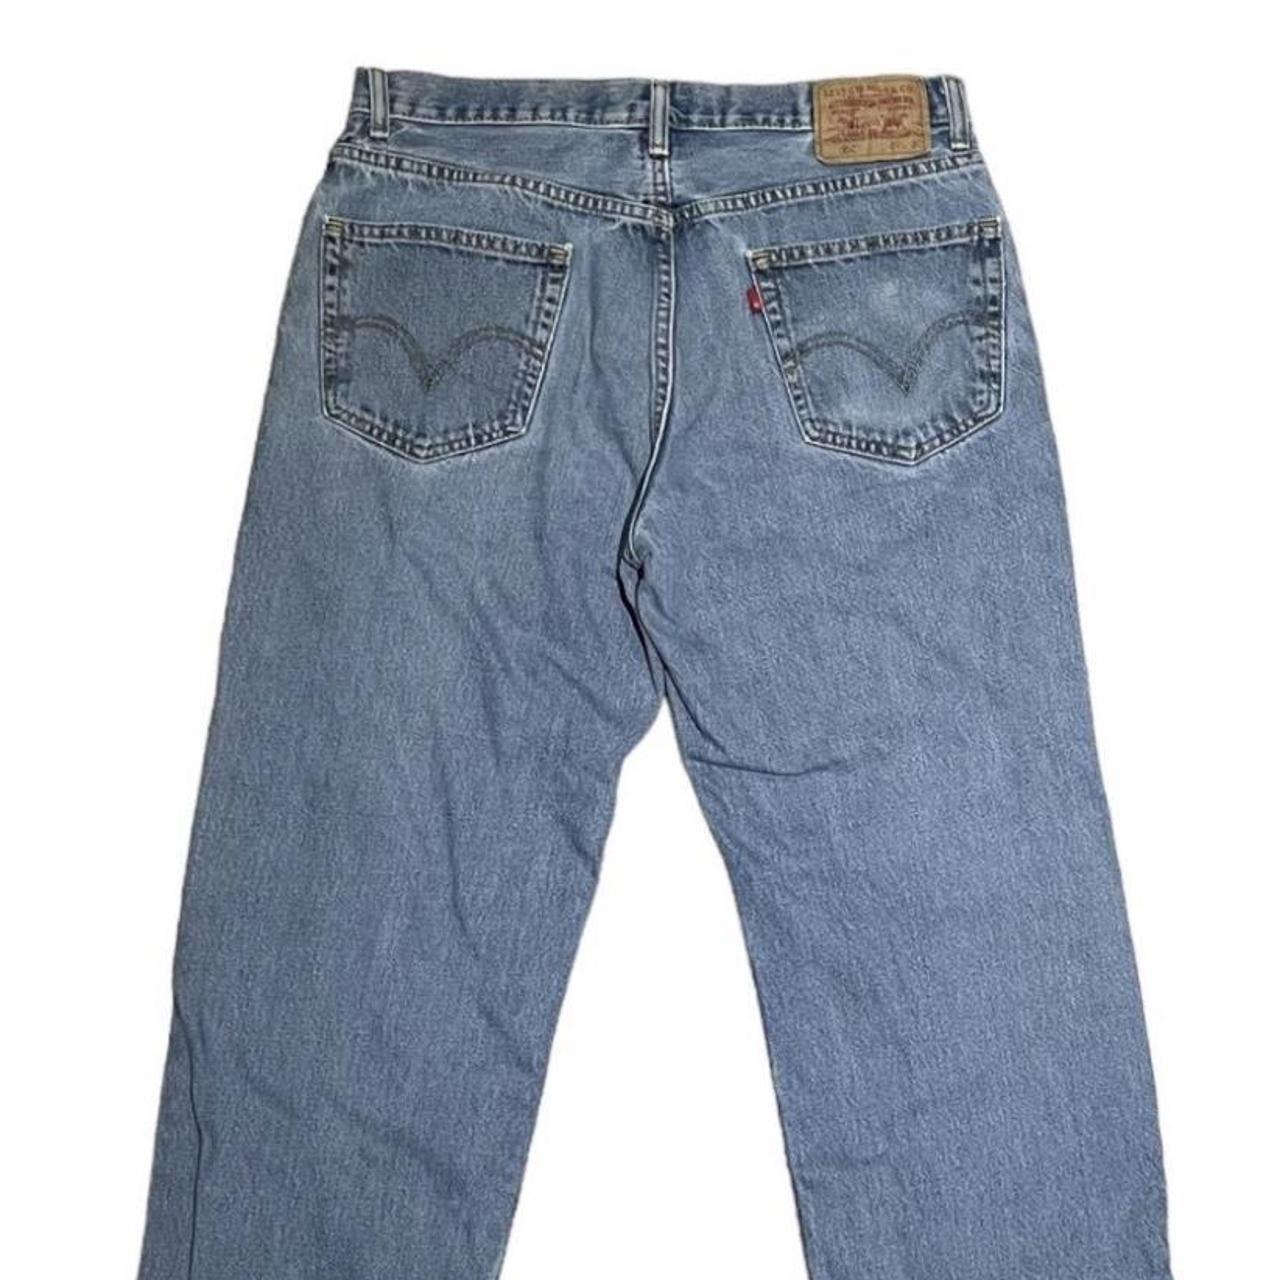 Levi’s 550 jeans no damage W34 L30 - Depop